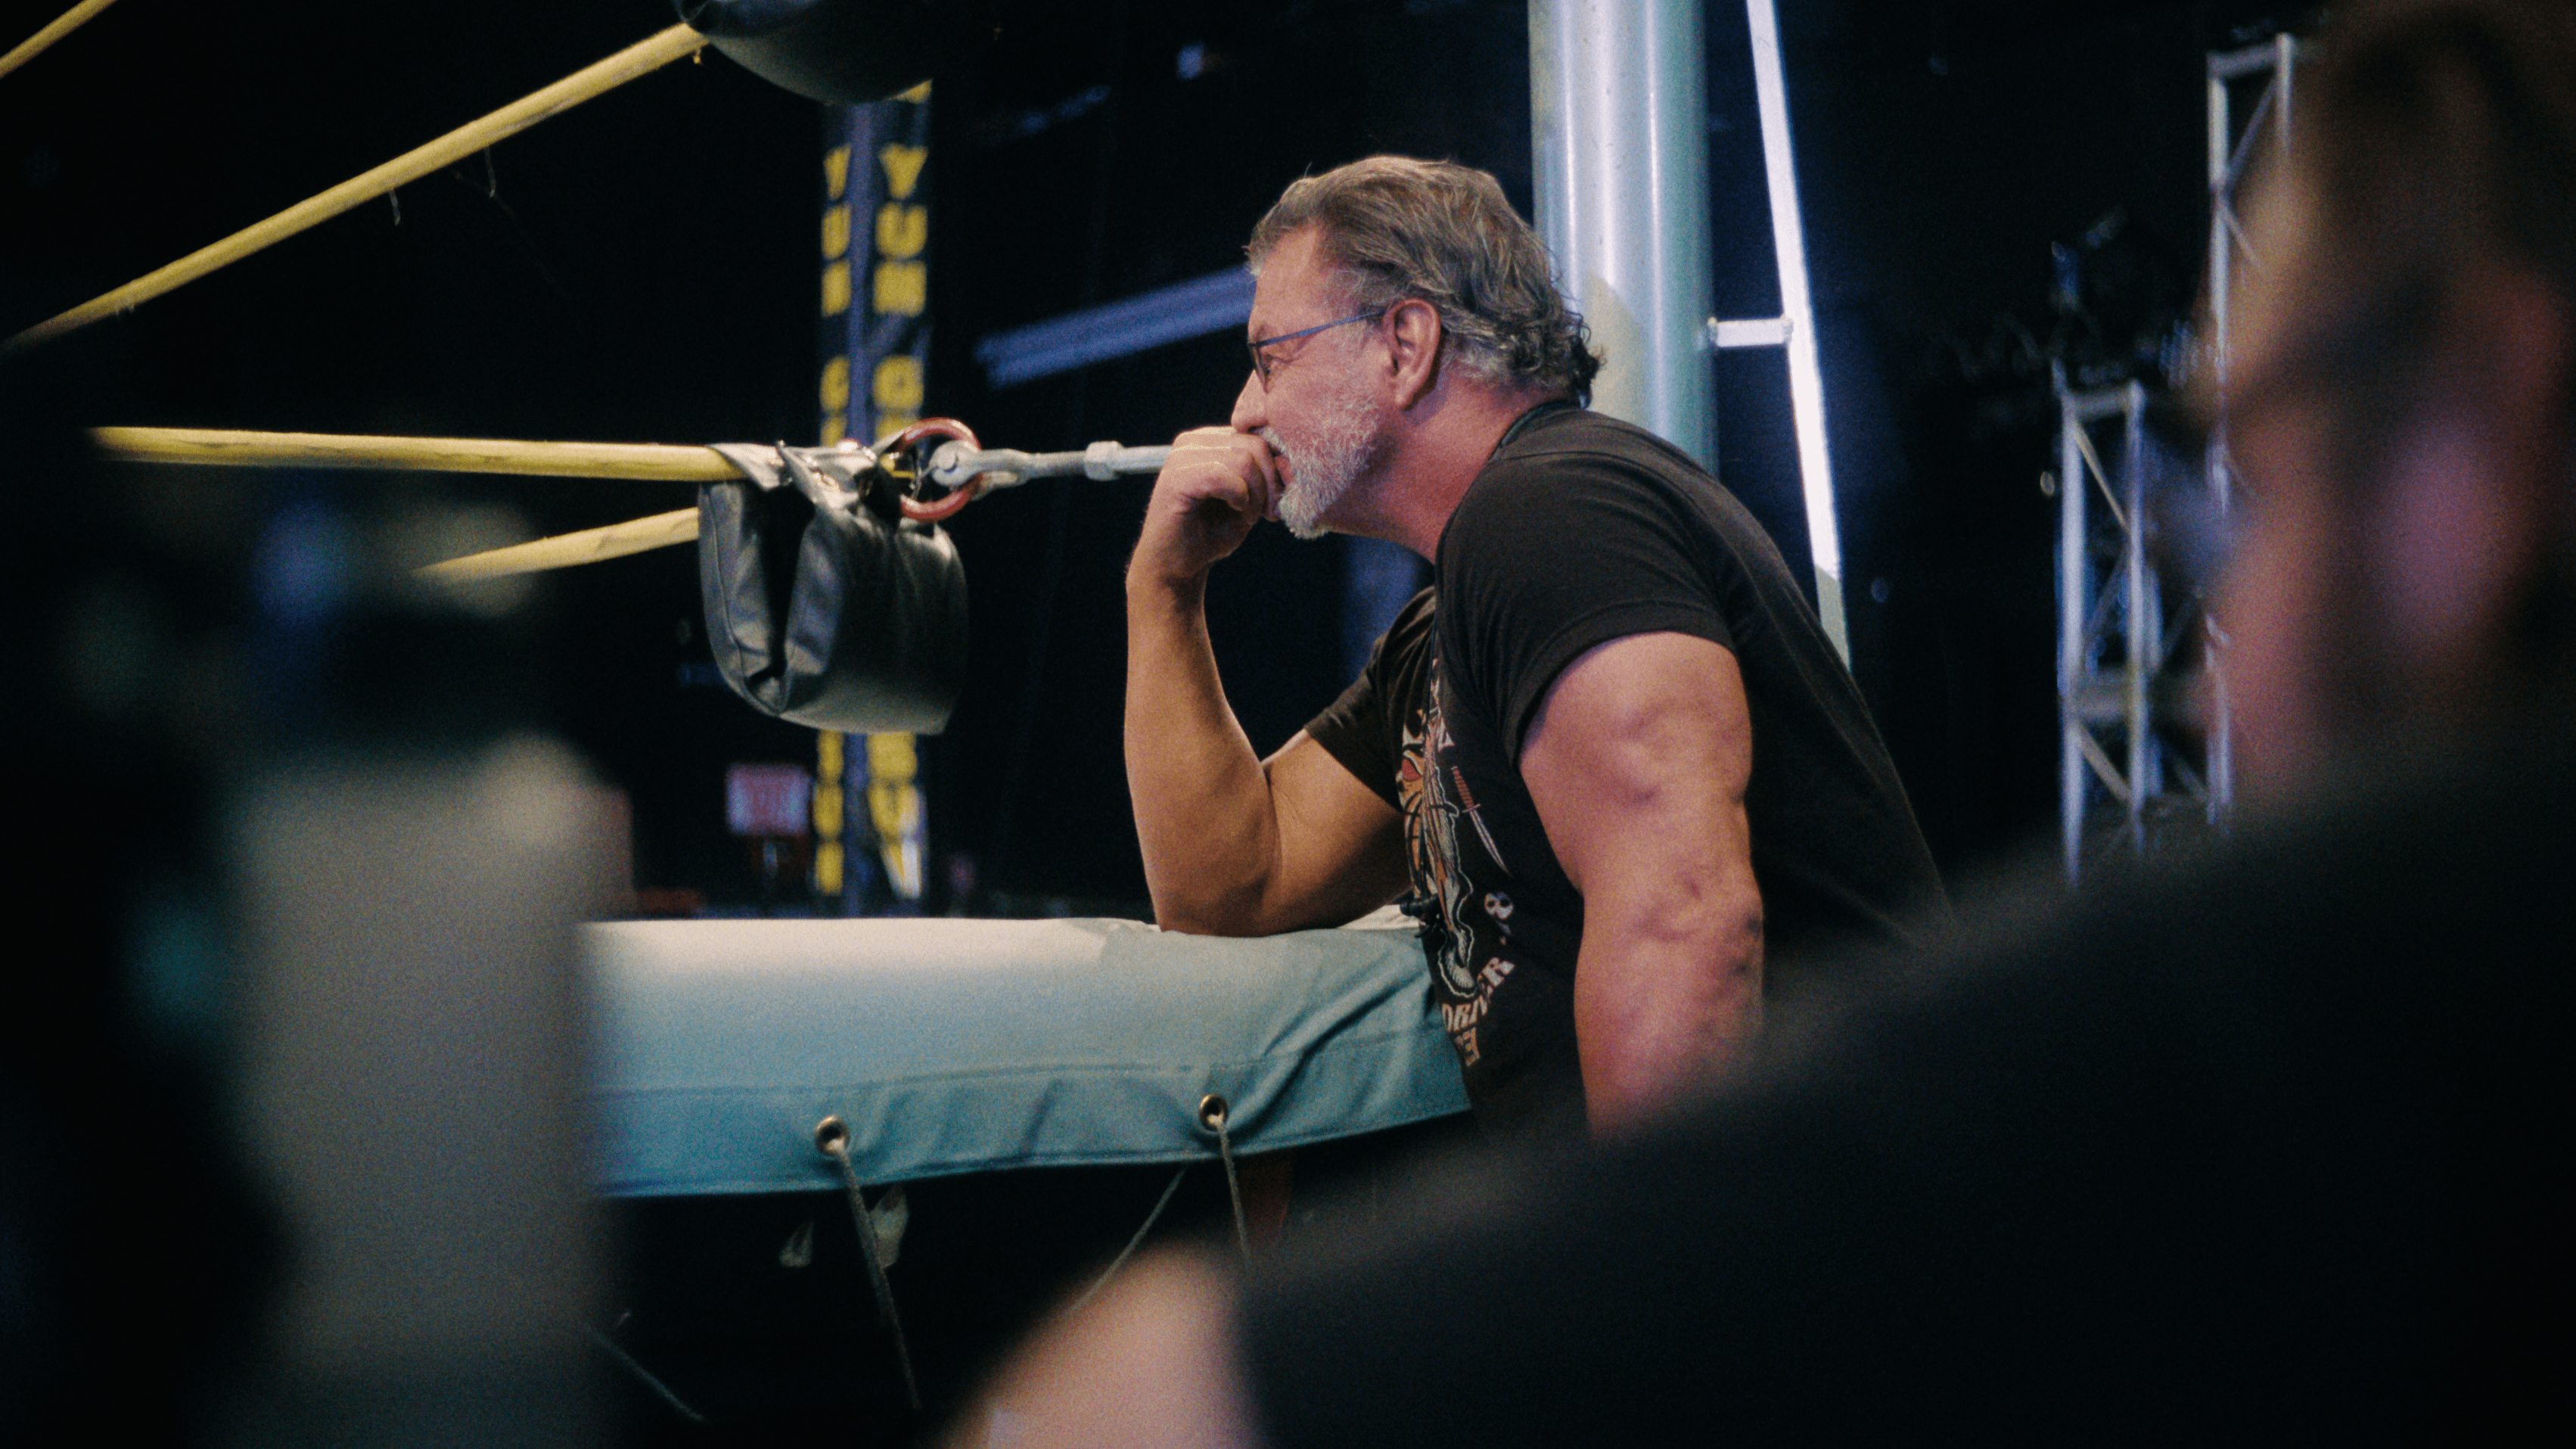 Al Snow in <i></p>
<p>Zápasníci</i> </p>
<p>Al Snow v <i>Zápasníci</i></p>
<p>. .  <em>Zvonenie</em>. . Ronnie skončí zaradený do vedľajšej koľaje..</p>
<p>V strede operácie topánok je sneh, absolvent WWF/WWE, ktorý si najlepšie pamätal za hranie duševne chorého charakteru, ktorý premietol svoju psychózu na hlavu figuríny, ktorú použil ako rekvizitu vo svojich bojoch. Ako naznačuje, že tento pozoruhodný príbeh, ktorý vyšiel zo štúdie Abnormálnej psychológie zápasníka. Inteligentný, kreatívny a prudko oddaný OVW a jeho hviezdami, robí všetko od písania oblúkov príbehu ligy až po disciplináciu odporúčaných zamestnancov.  <em></em> .”</p>
<p><img data-tf-not-load=